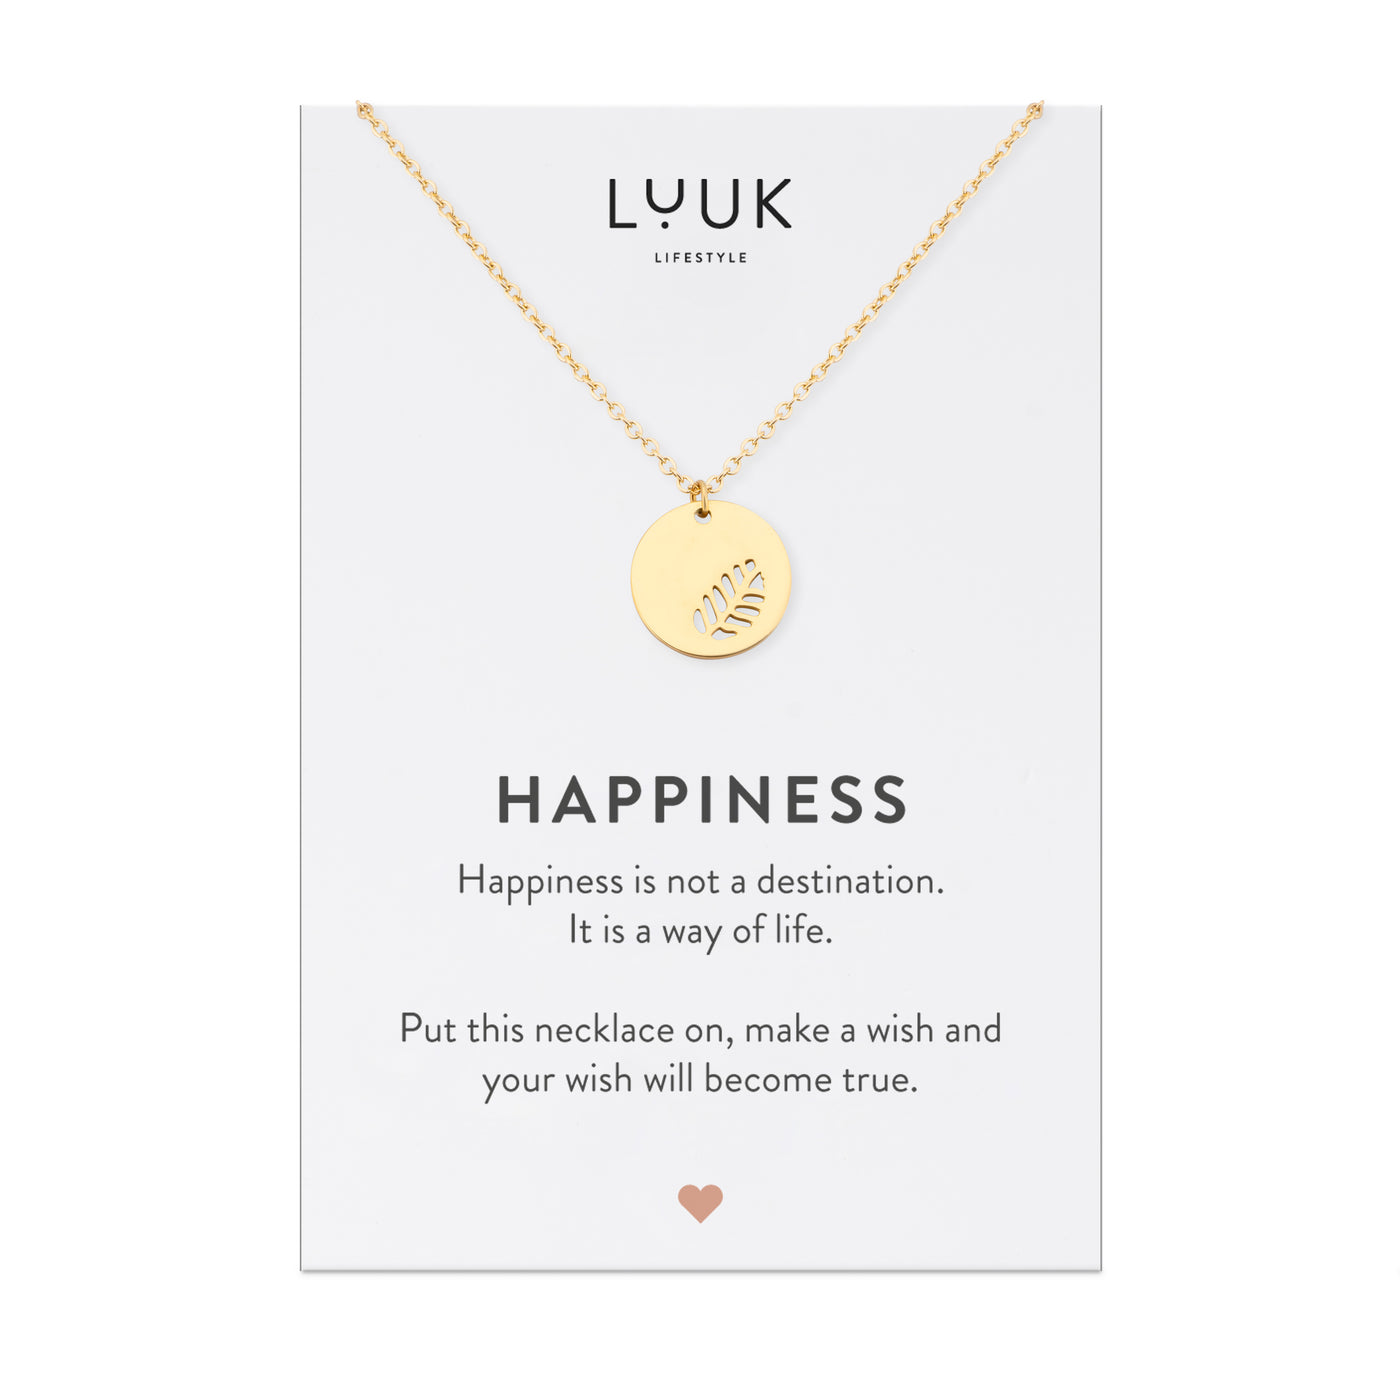 Gold Kette mit graviertem Blatt ANhänger aus Edelstahl auf Happiness Spruchkarte von der Marke Luuk Lifestyle 